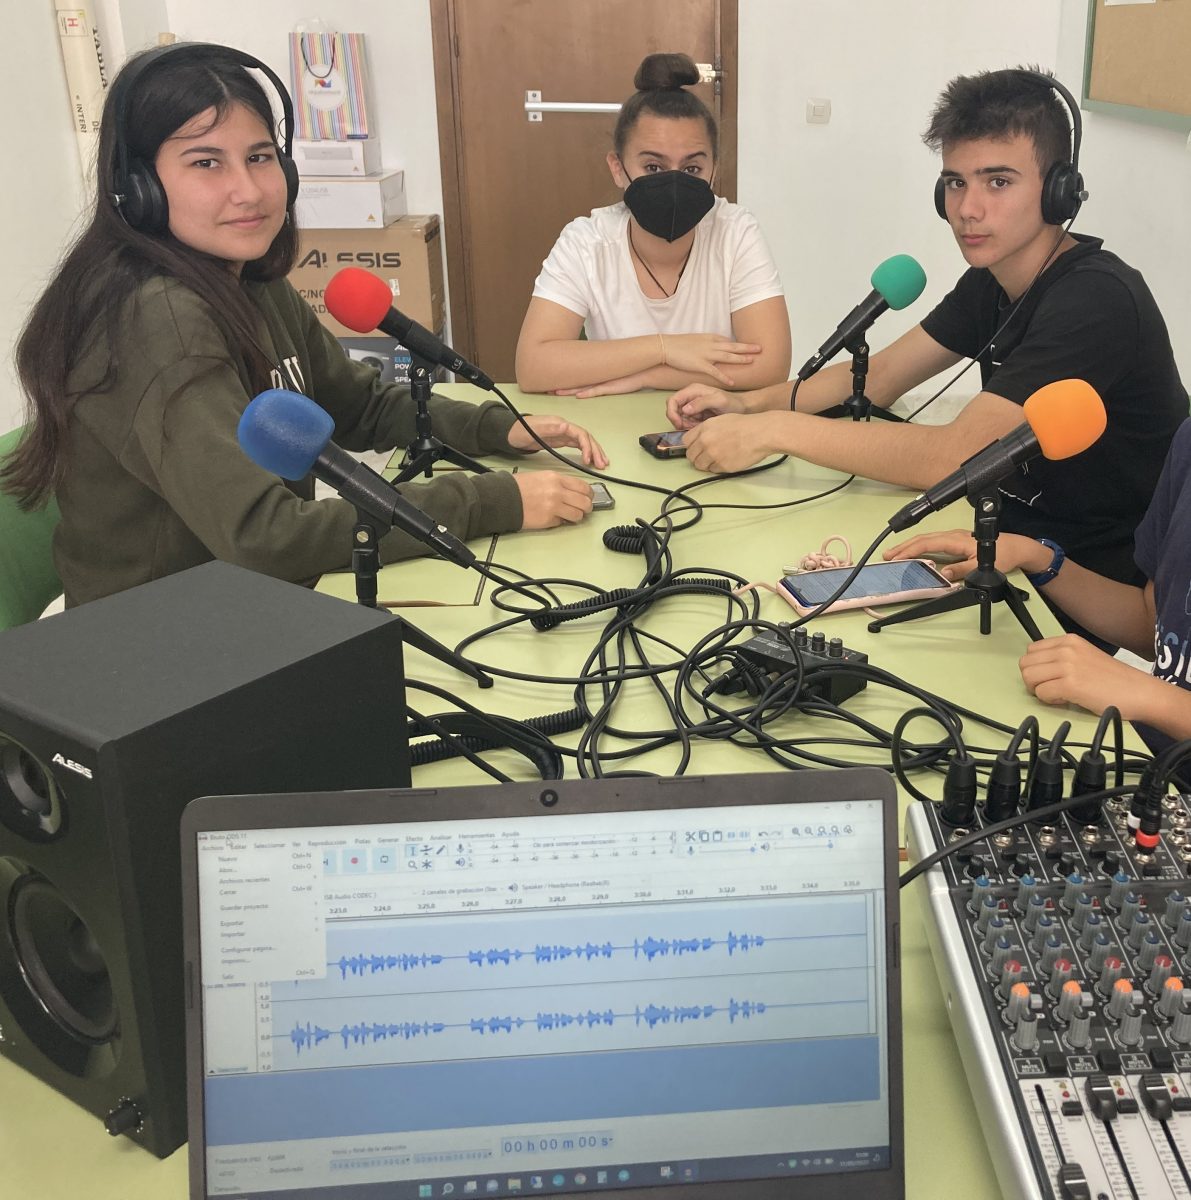 Equipo en Picasso FM listo para grabar su podcast 